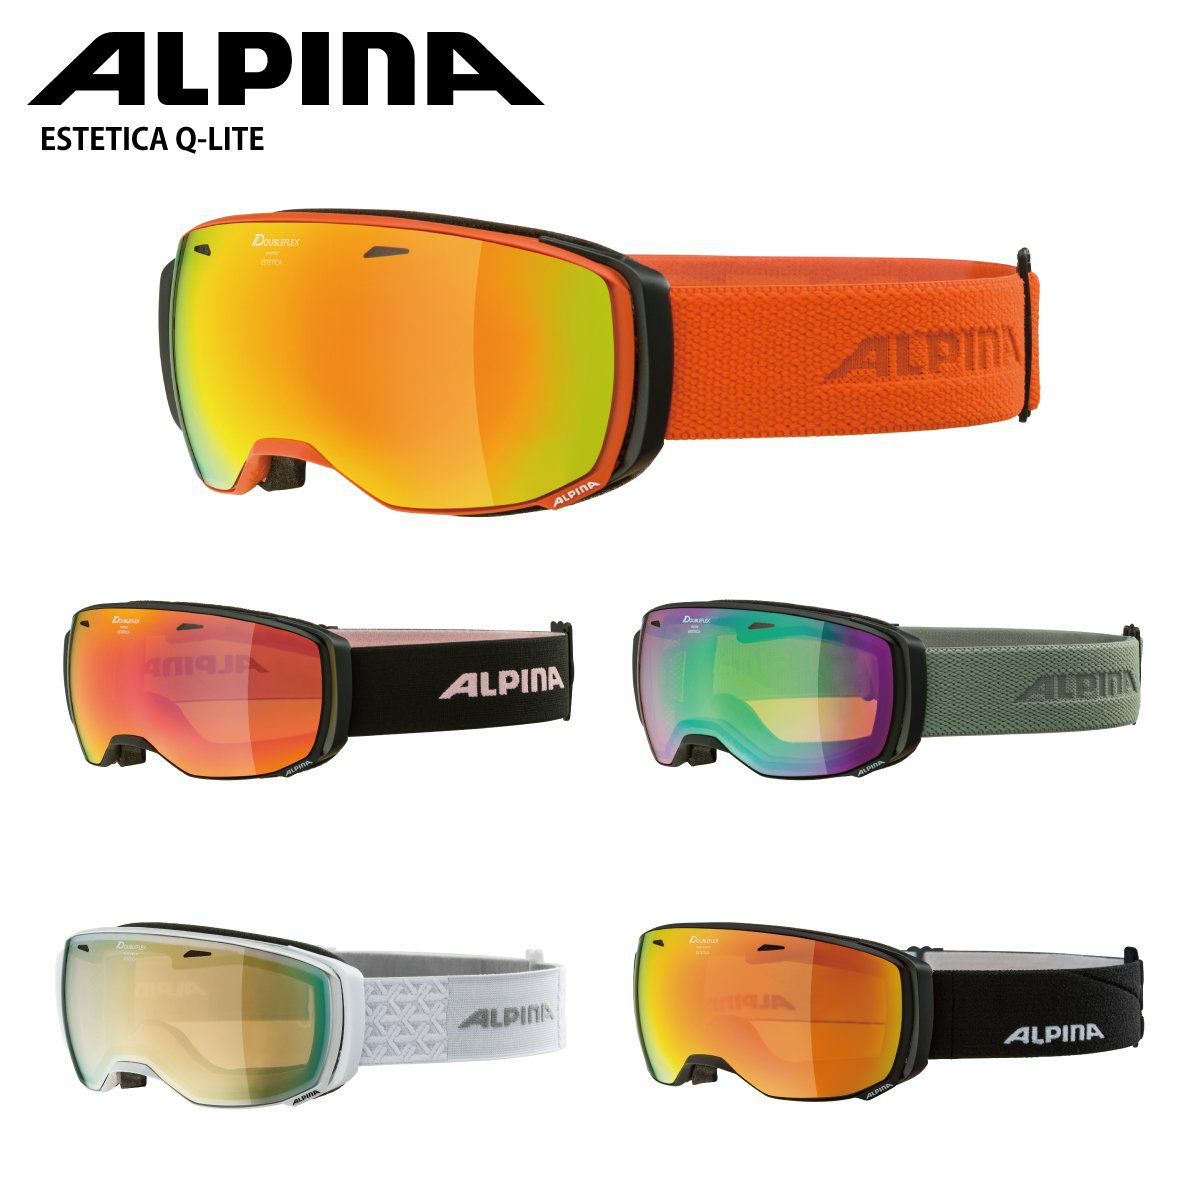 アルピナ スキースノーボードゴーグル ユニセックス コンパクトタイプ ミラーレンズ メガネ使用可 ESTETICA Q LITE ブラック/ 